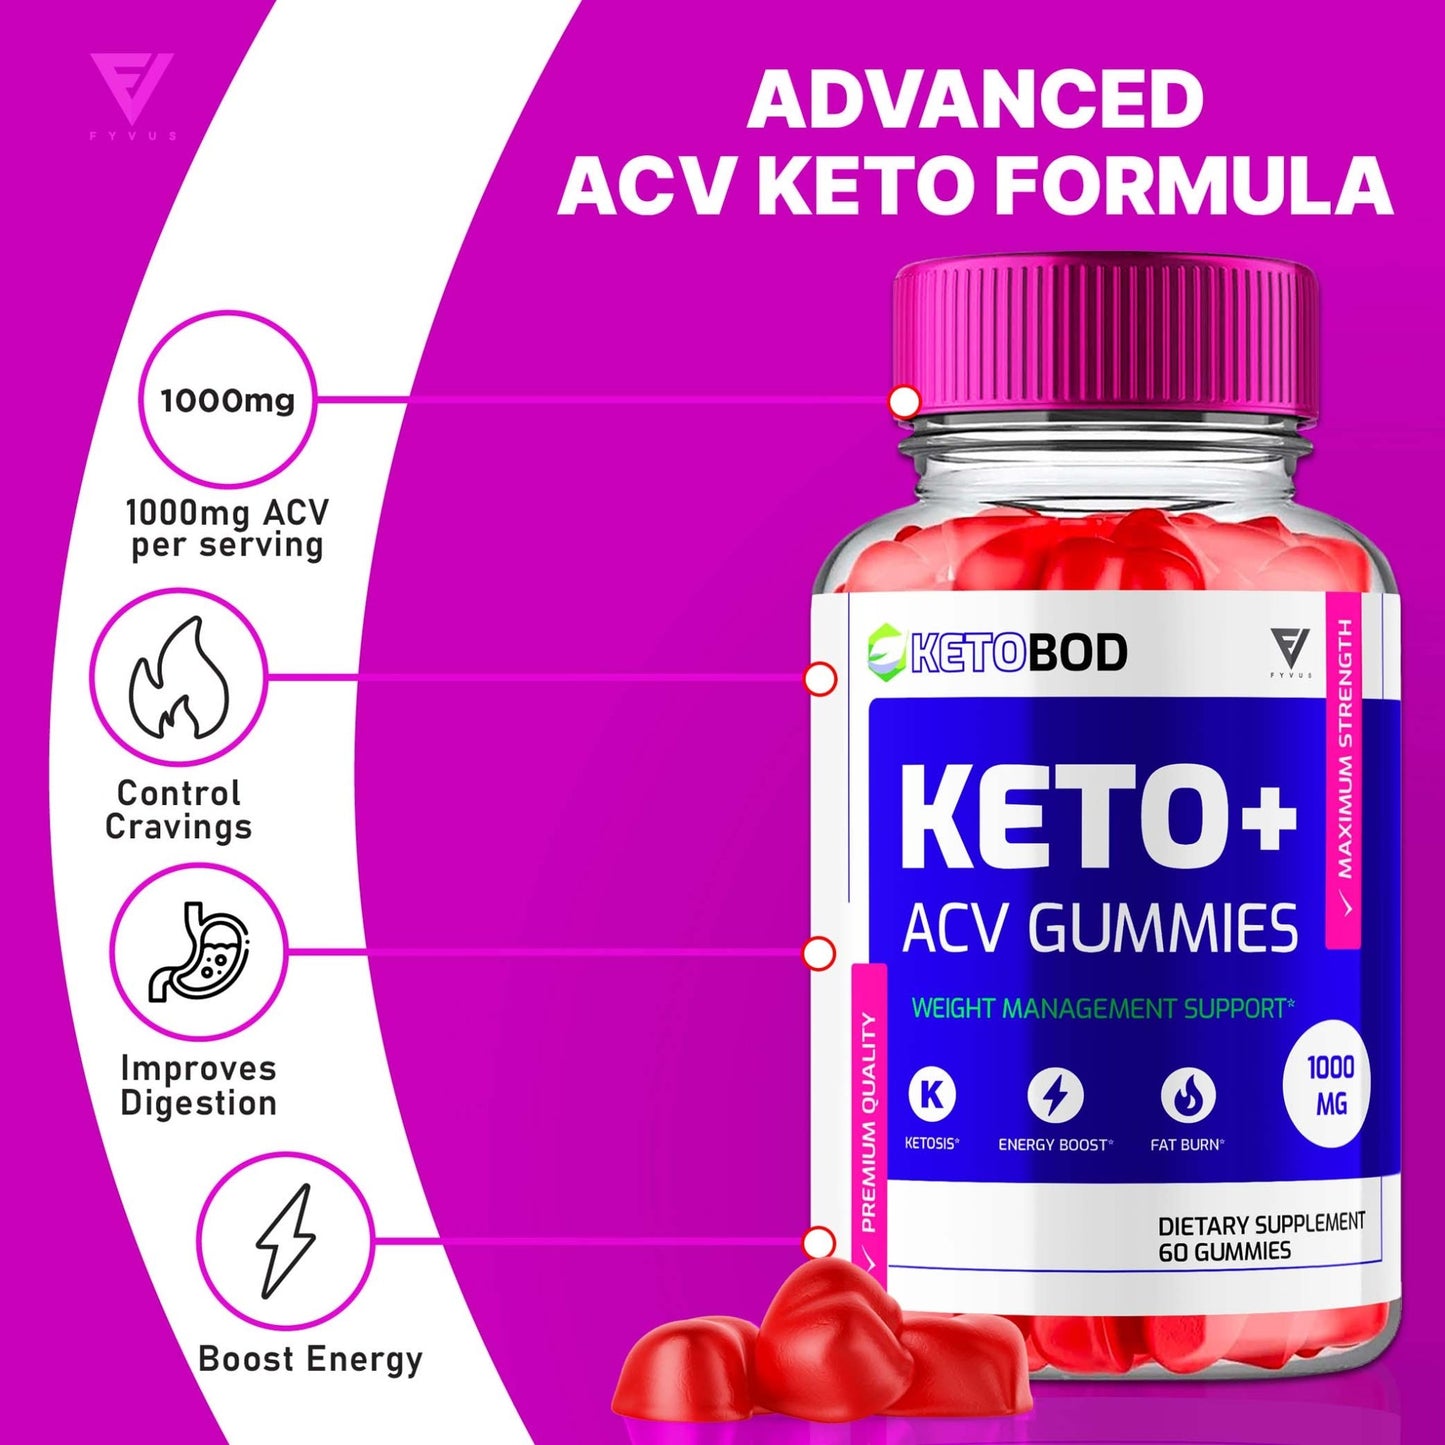 KetoBod - Keto ACV Gummies - Vitamin Place